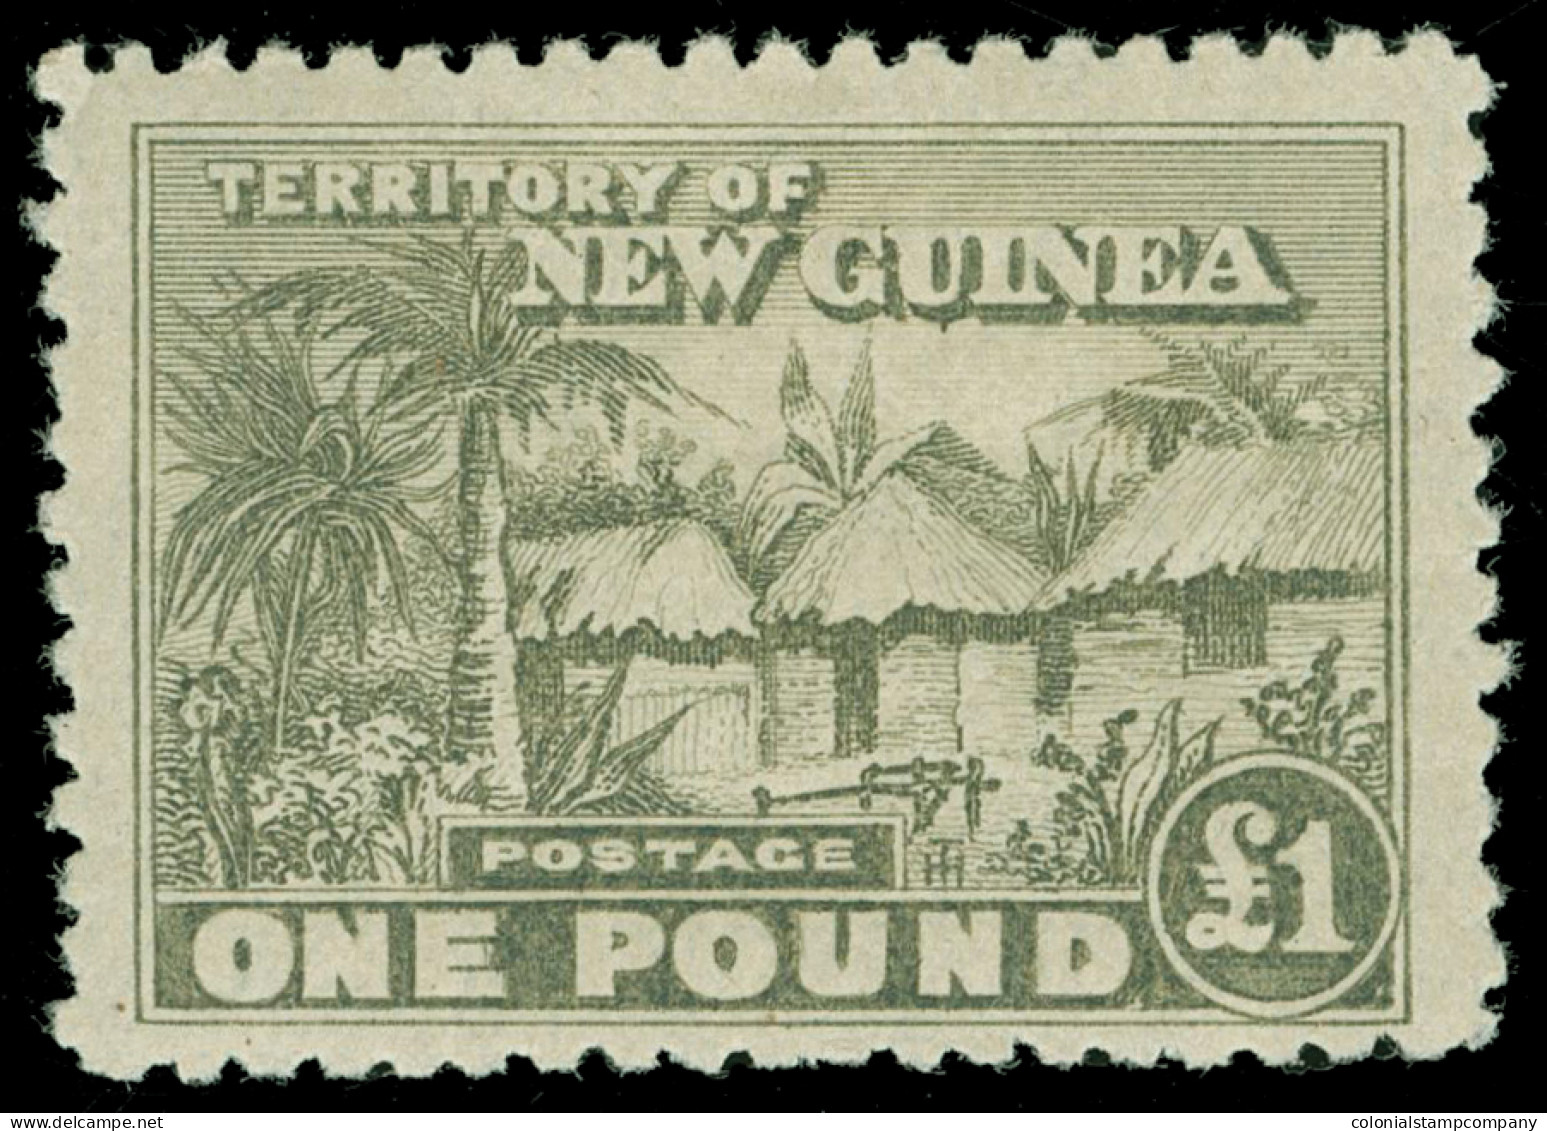 * New Guinea - Lot No. 1069 - Papua-Neuguinea